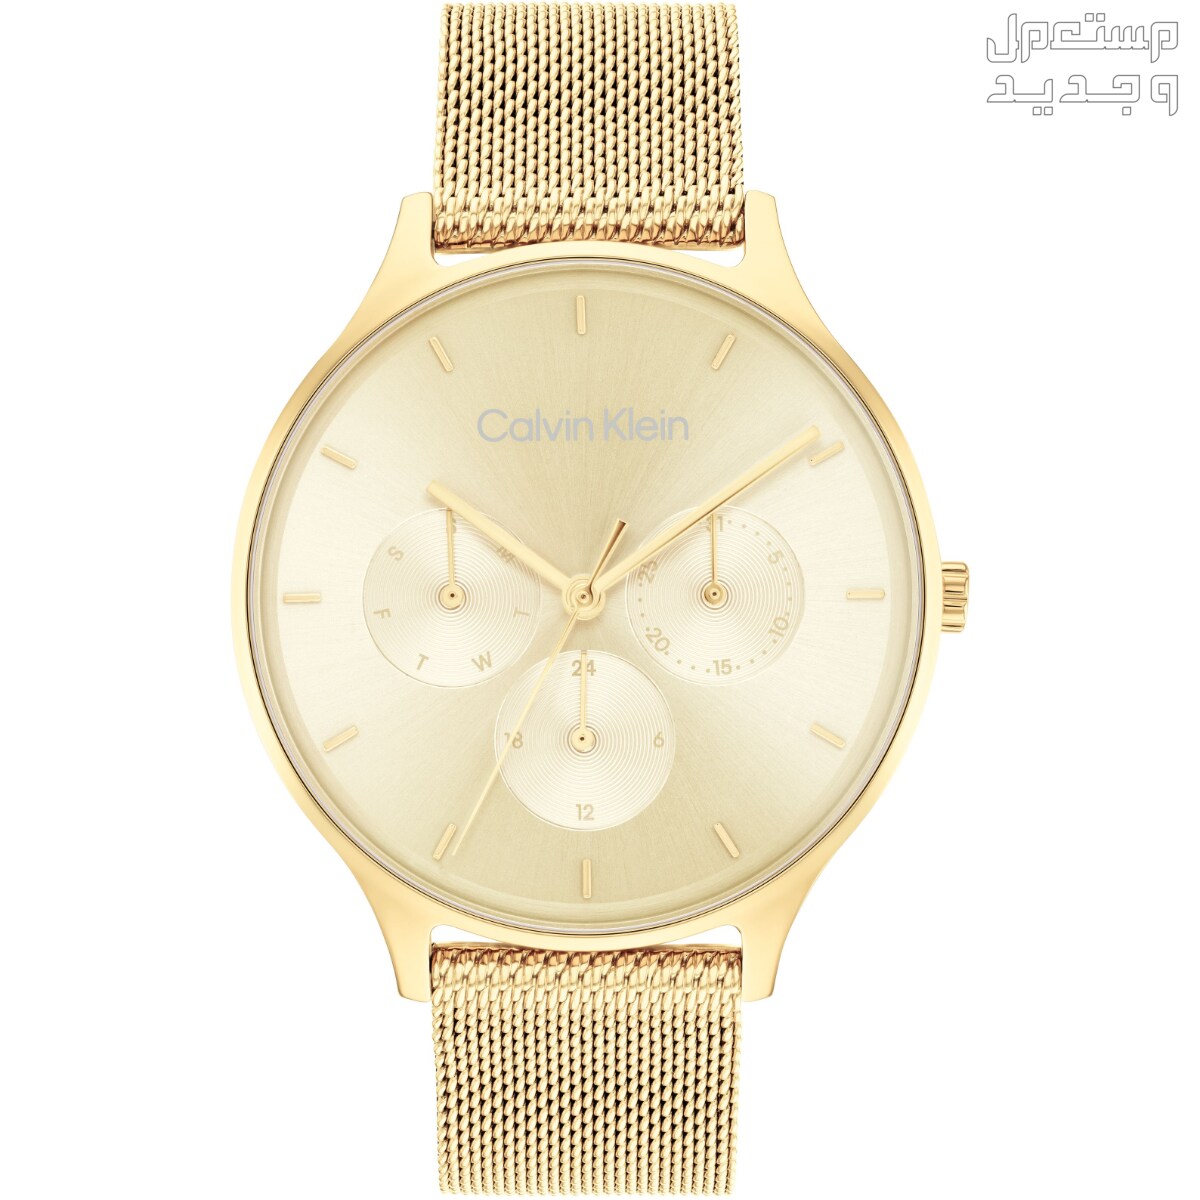 أنواع ساعات يد ذهب نسائية واسعارها في الإمارات العربية المتحدة ساعة Calvin Klein Timeless Multifunction Day and Date Gold Steel Watch 25200103